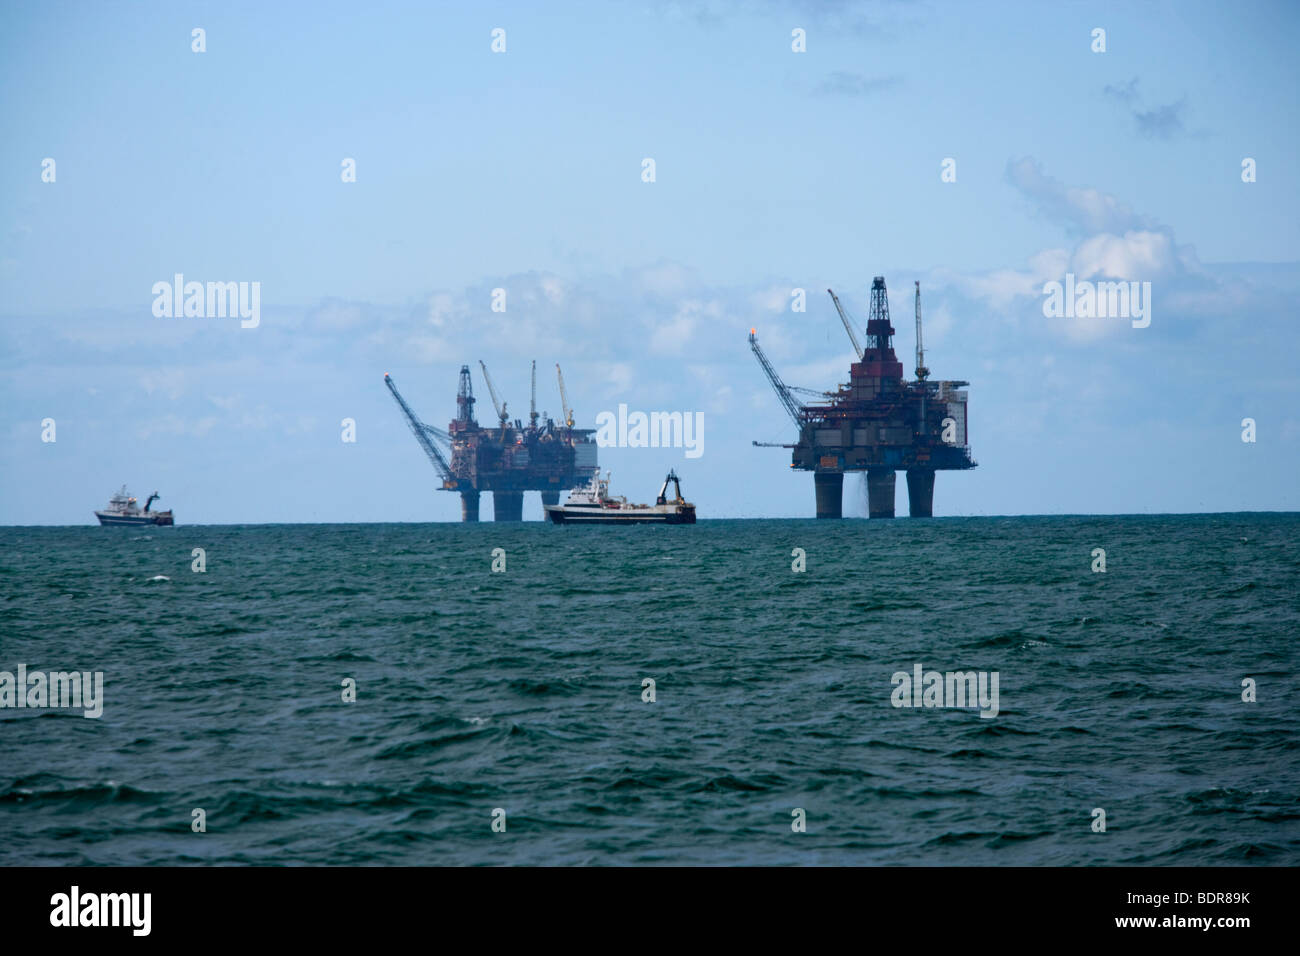 Gullfack oil platform Stock Photo